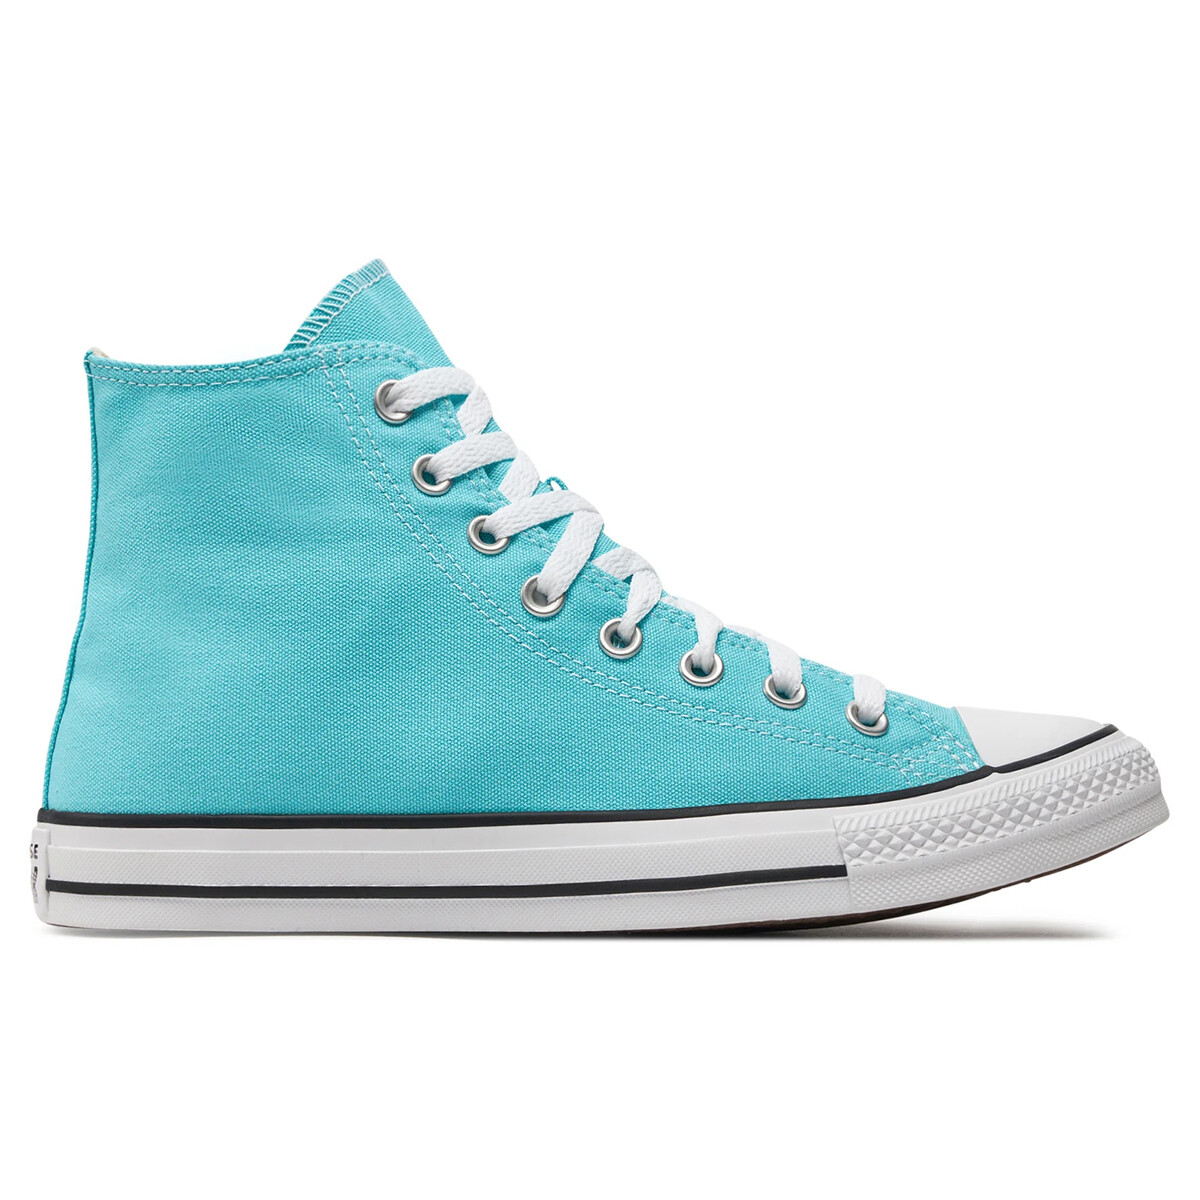 Scarpe Donna Sneakers Converse A06562C Blu